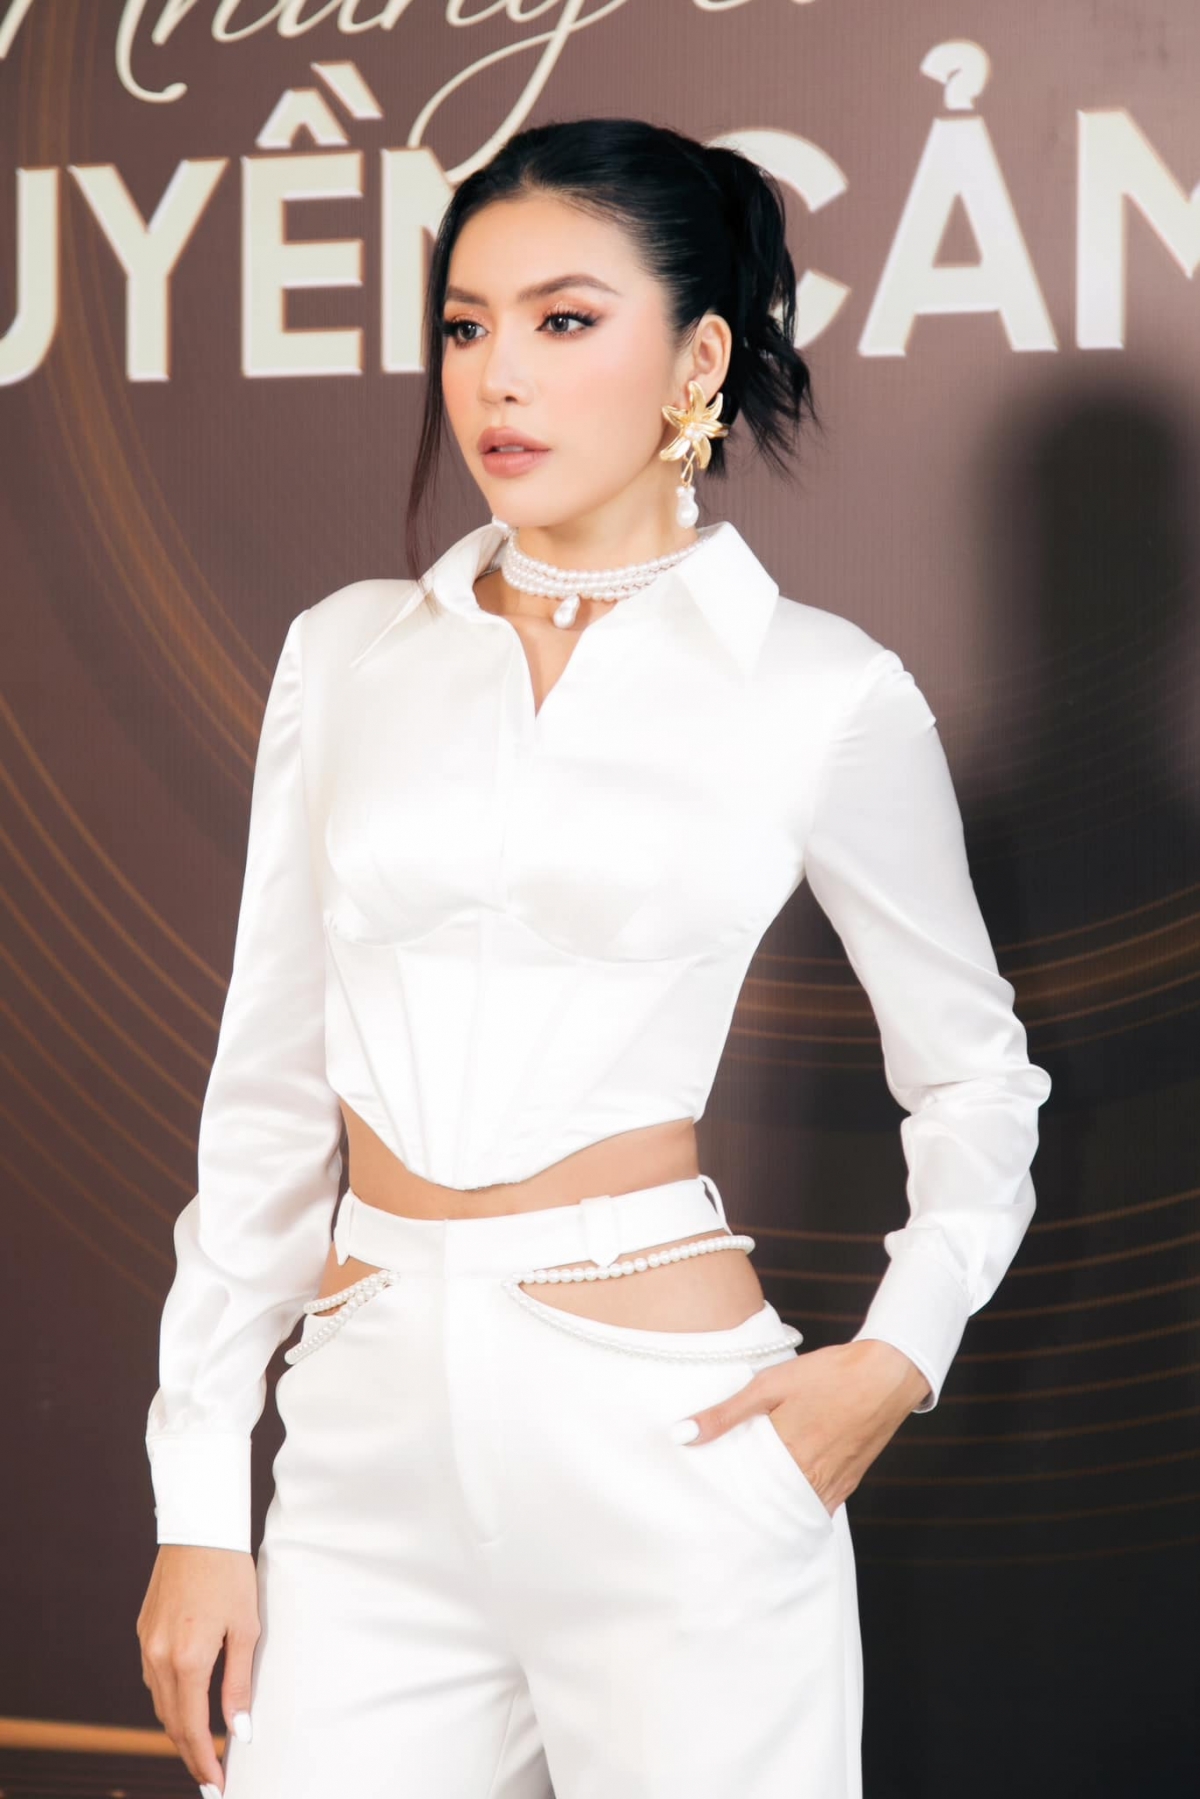 Siêu mẫu Minh Tú diện trang sức đắt giá, lên đồ sang chảnh dự sự kiện - Ảnh 7.